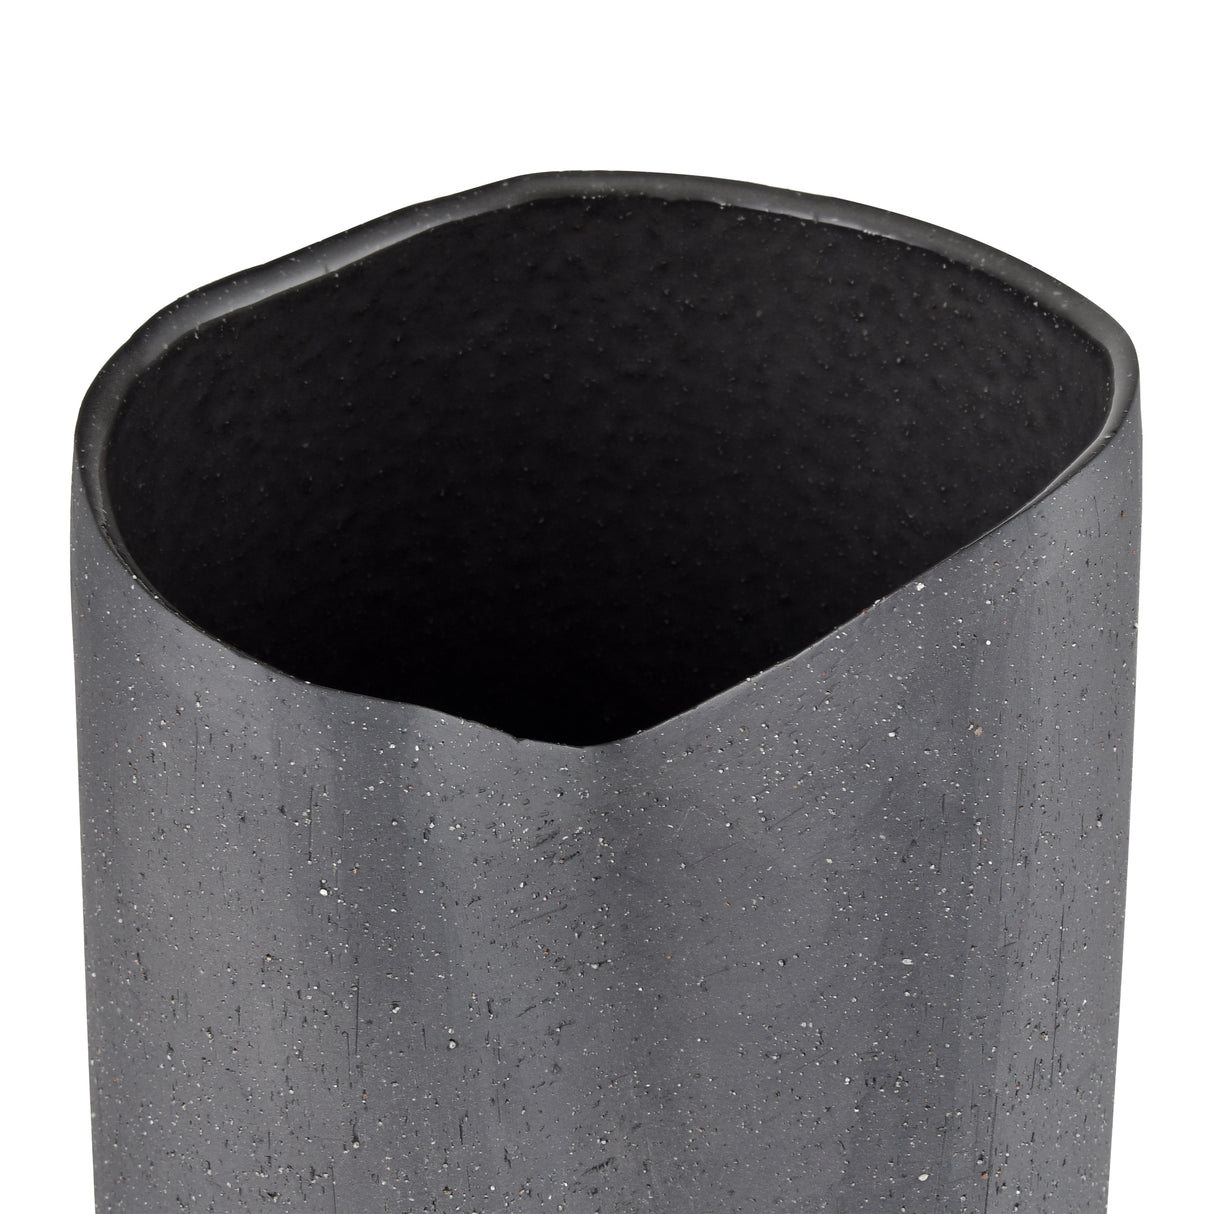 Elk H0017-9752 Ferraro Vase - Folded Black